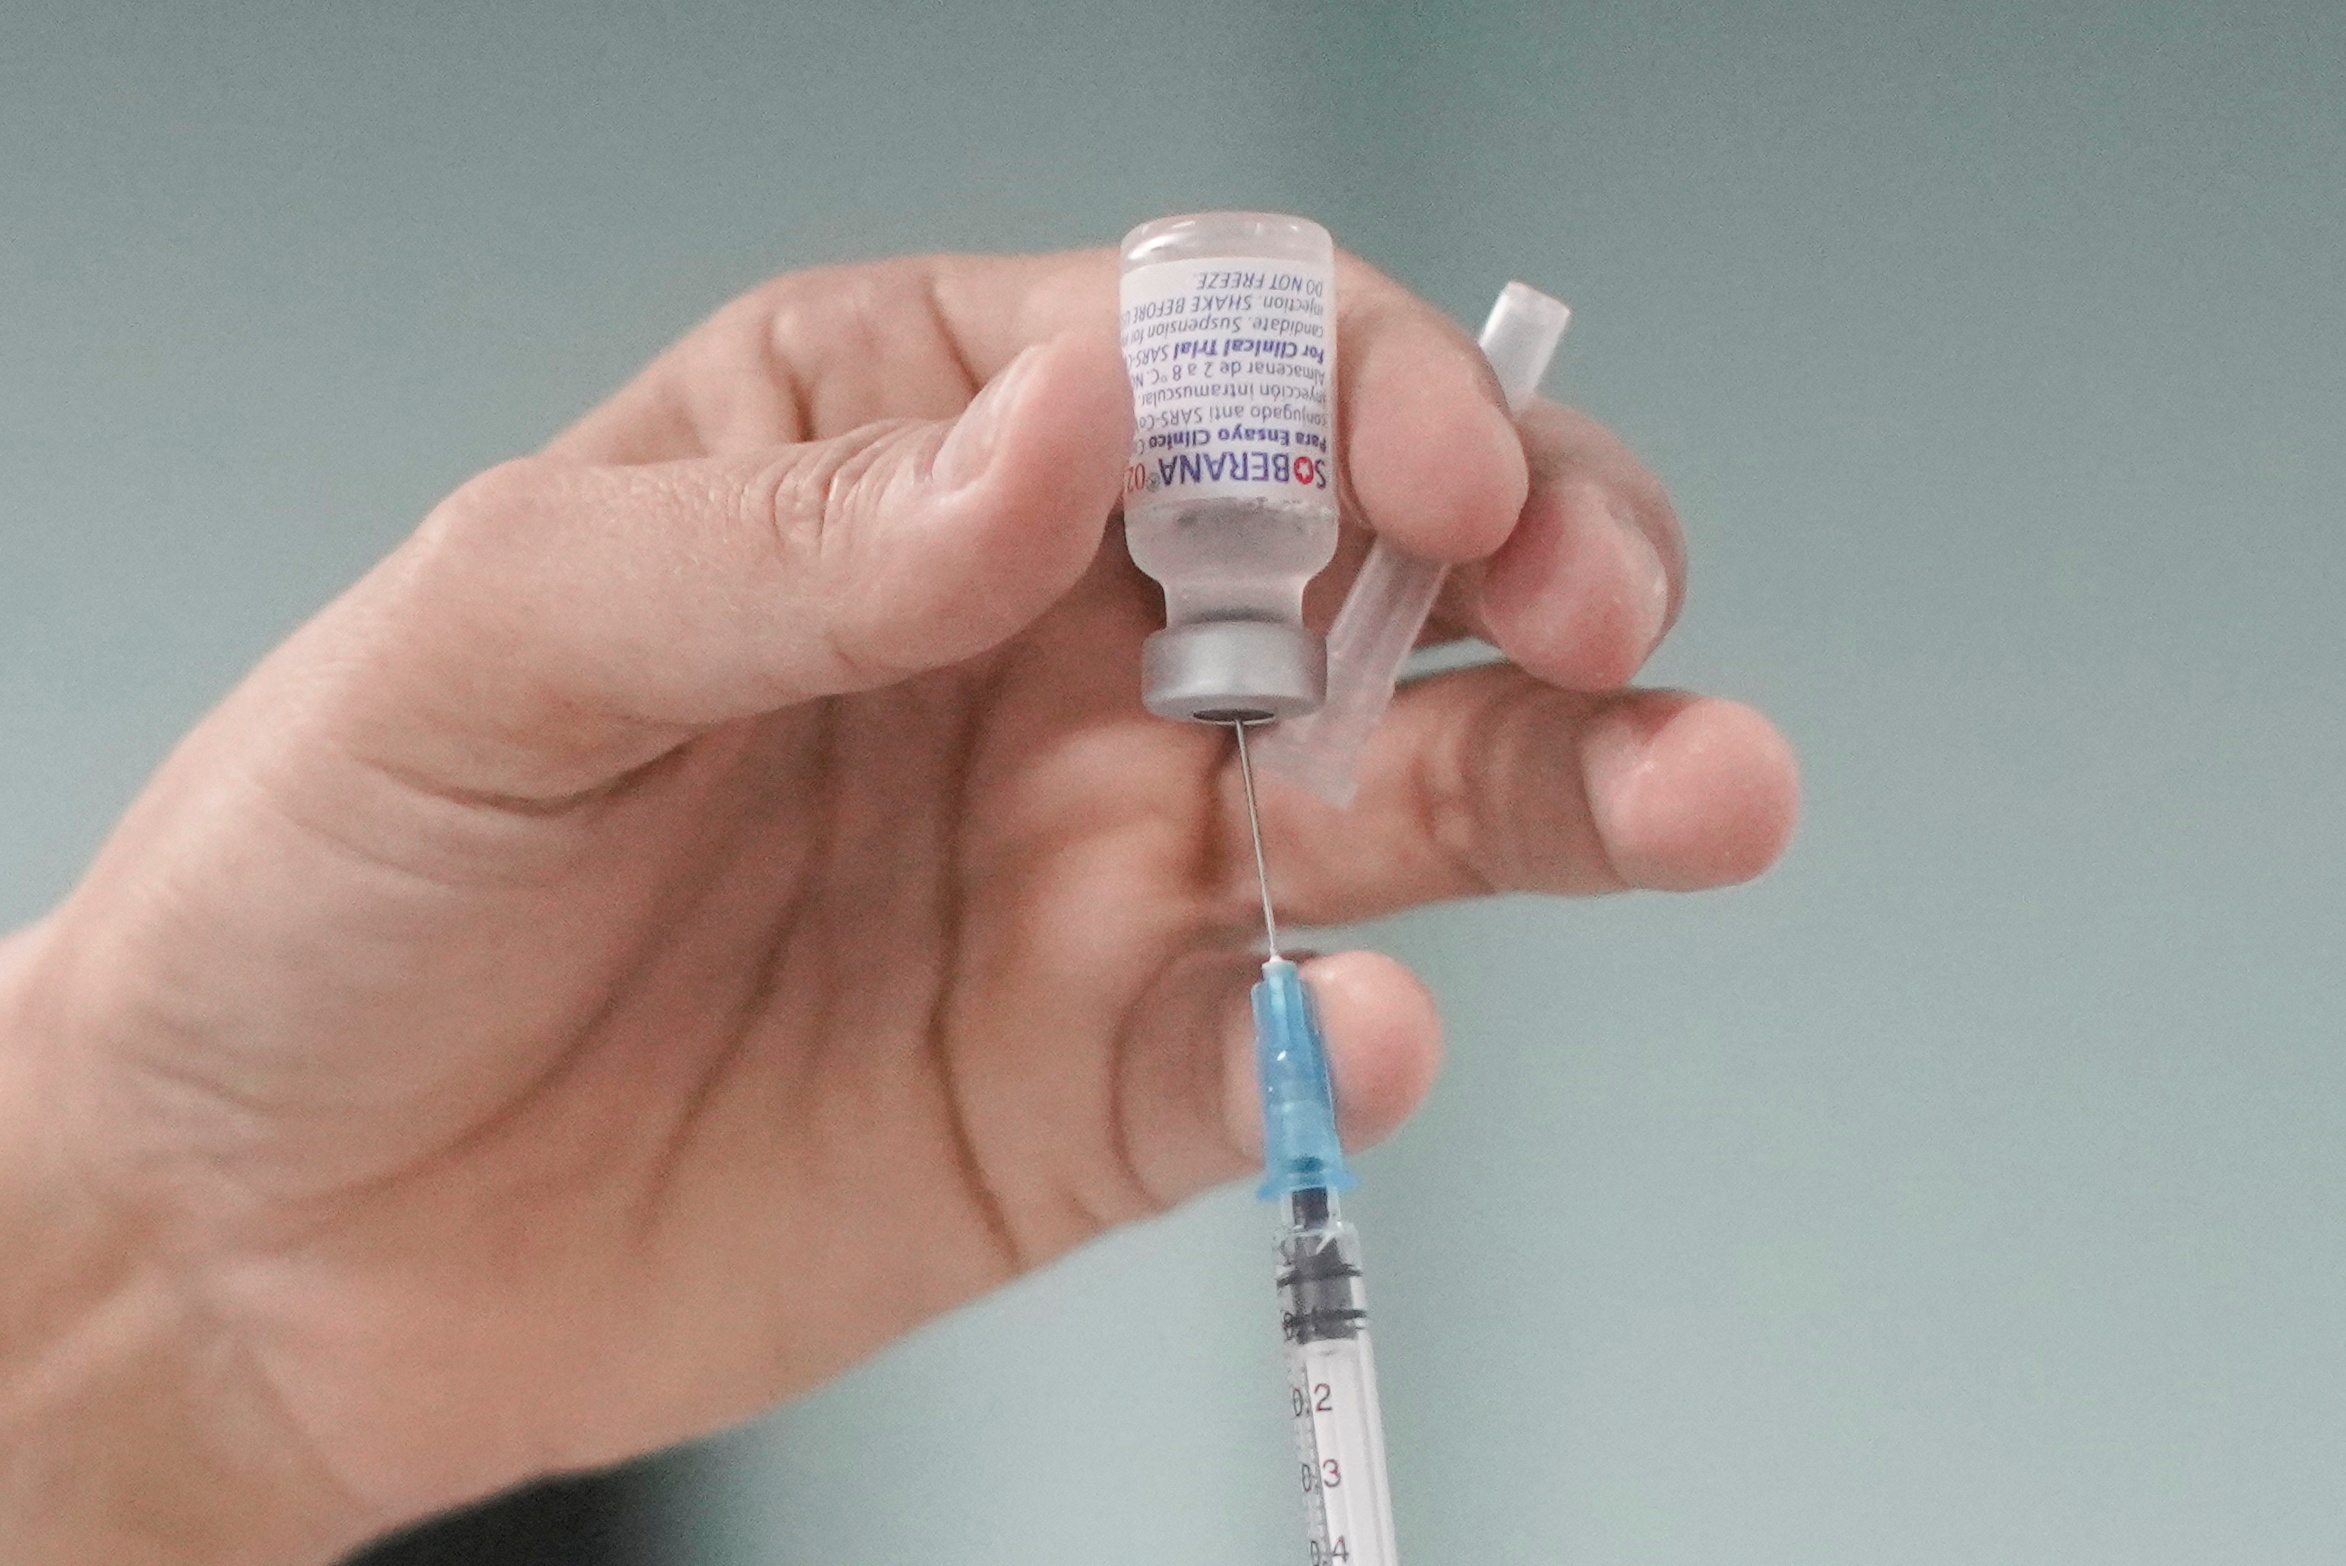 Cuba begins clinical trial testing COVID-19 vaccine in children